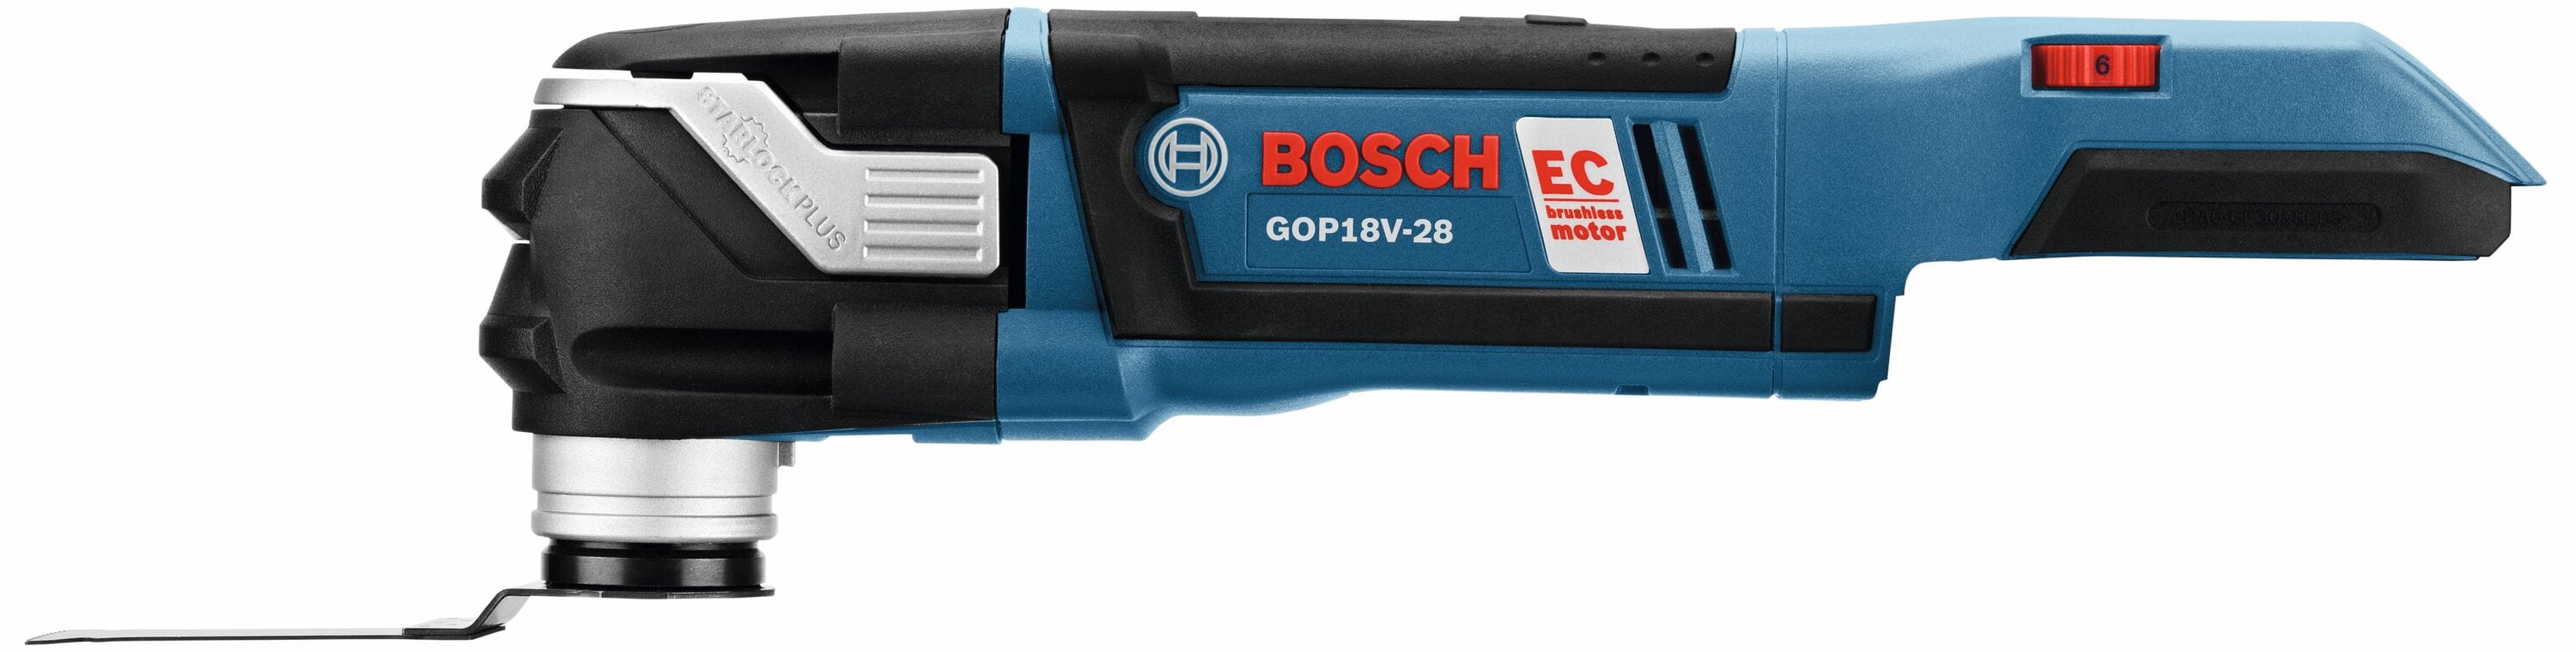 BOSCH GOP18V-34B12 18V Brushless StarlockPlus® Oscillating Multi-Tool Kit  with (1) 2 Ah Standard Power Battery 